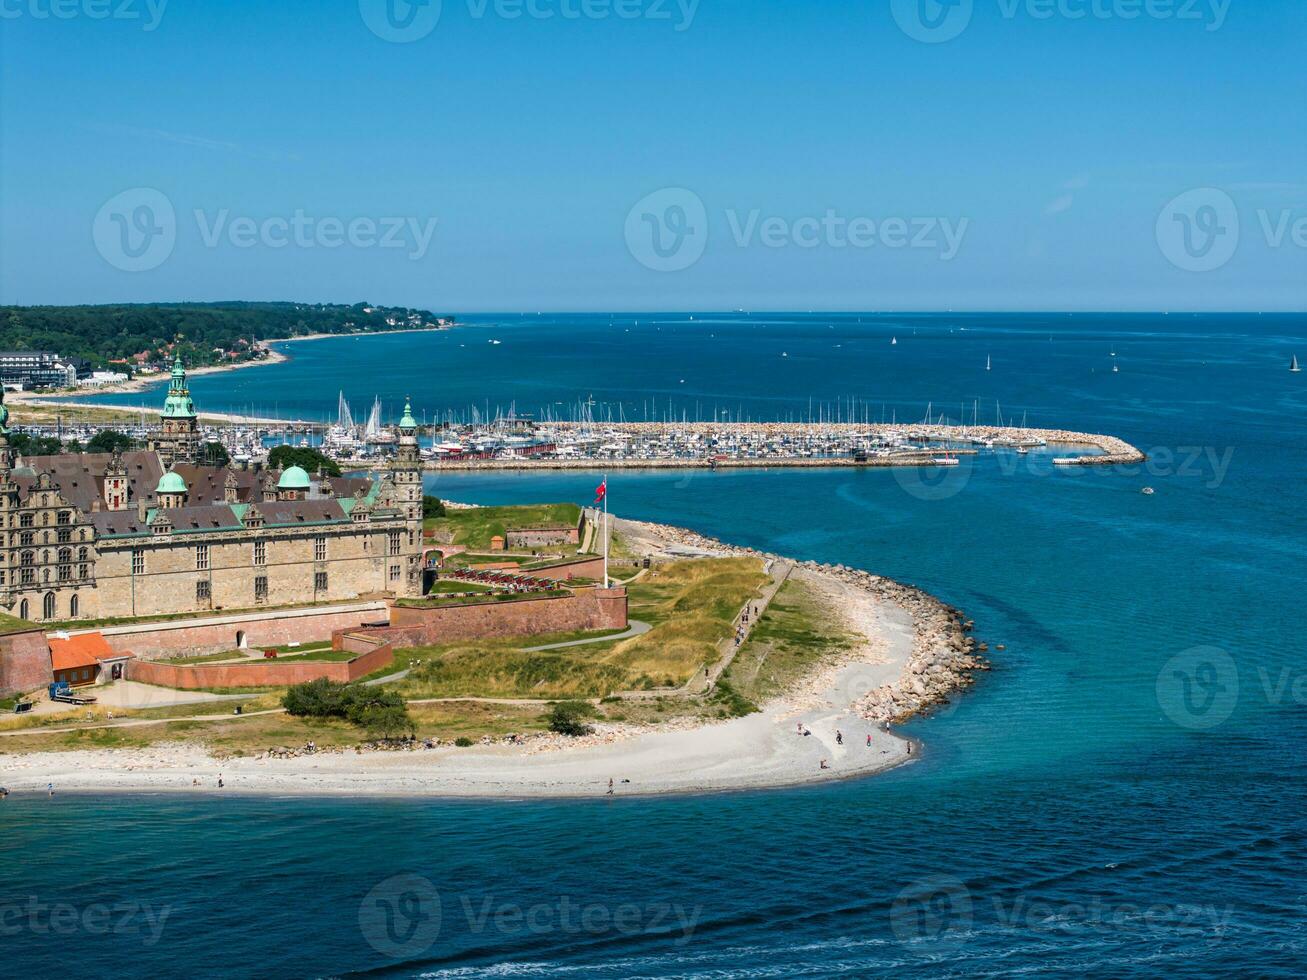 aereo Visualizza di Kronborg castello con bastioni, rivellino guardia il Ingresso per il baltico mare foto